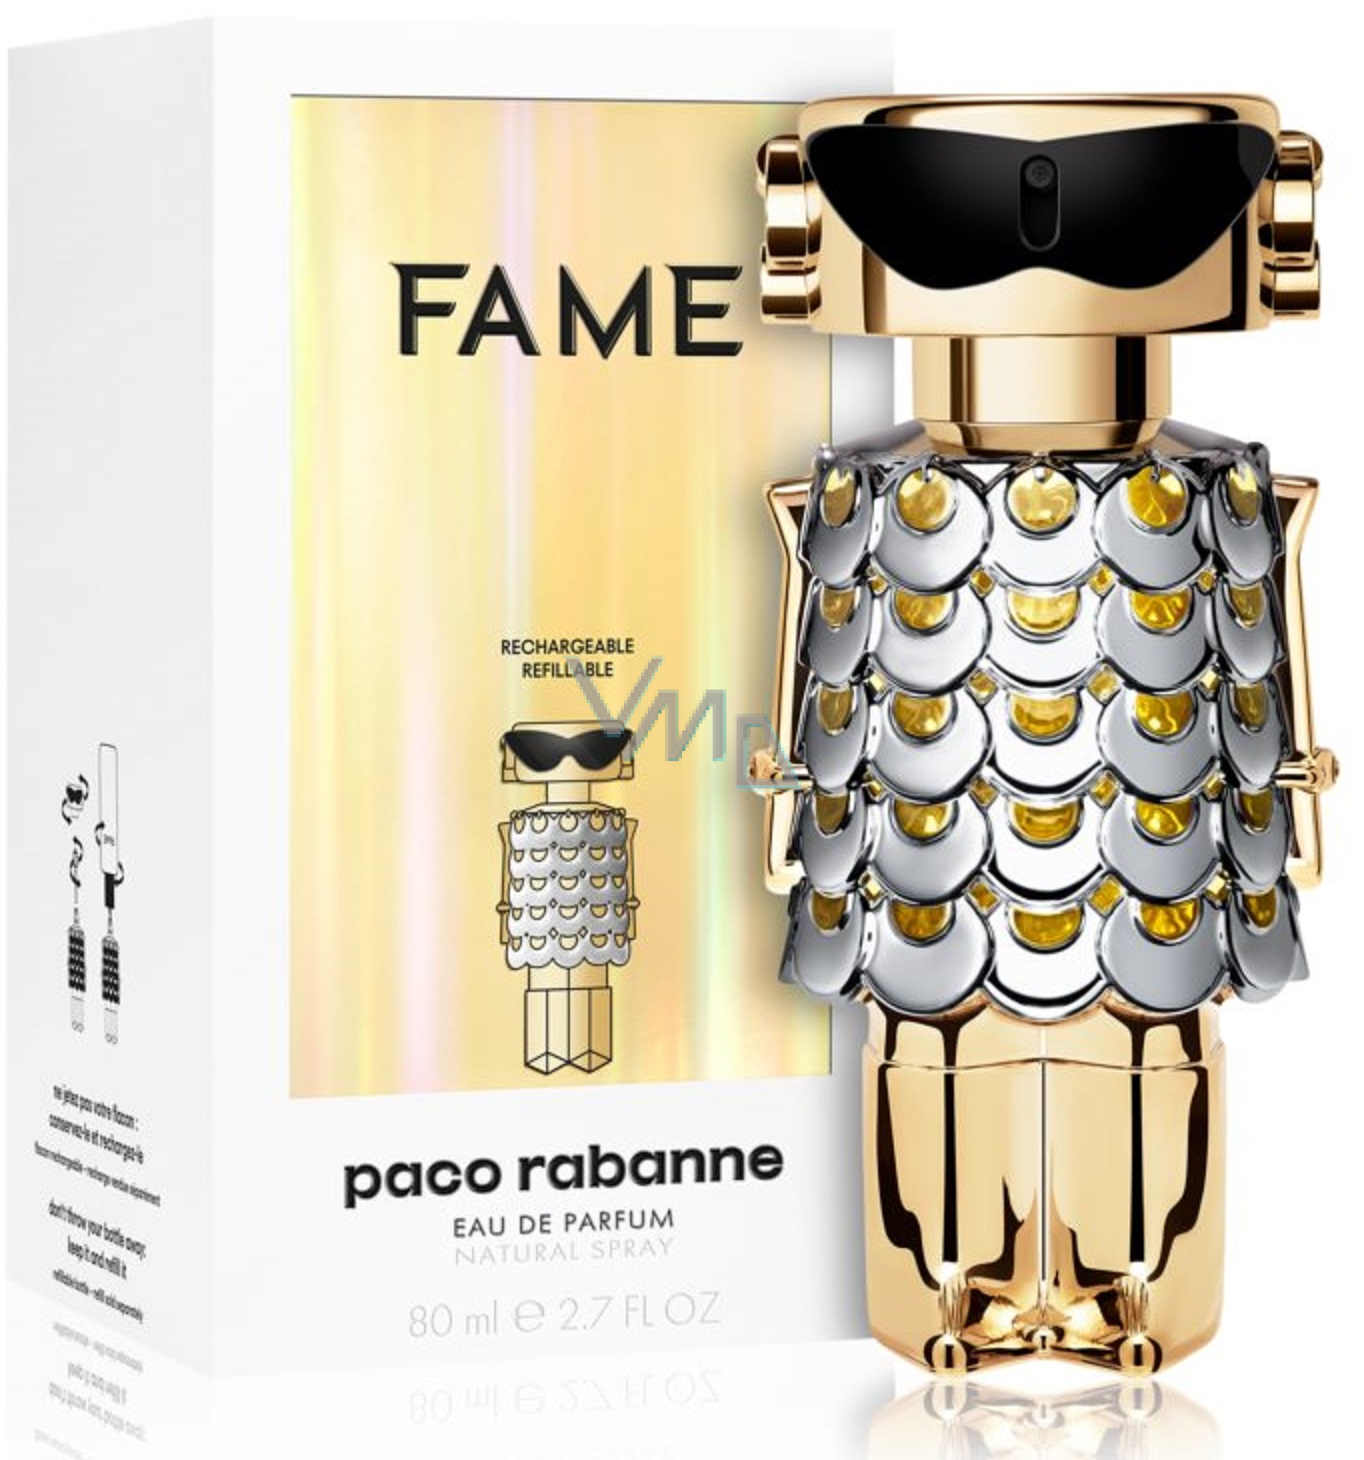 Paco Rabanne Fame eau de parfum refillable bottle for women 80 ml - VMD ...